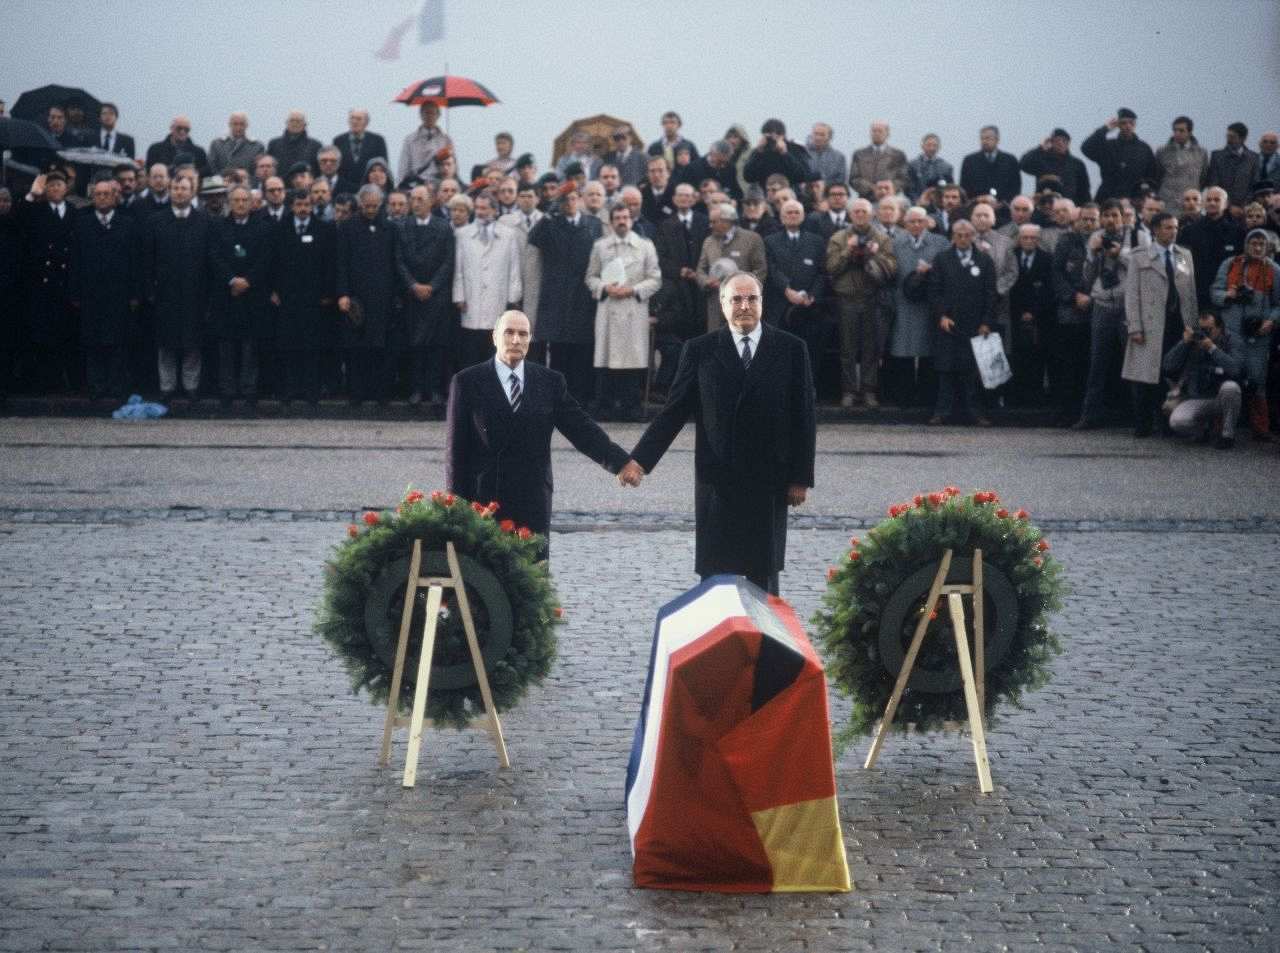 Farbfoto, Francois Mitterrand und Helmut Kohl stehen Hand in Hand auf Kopfsteinpflaster vor zwei aufgestellten Kränzen und einem mit deutscher und französischer Fahne abgedeckten sargartigen Gebilde. Im Hintergrund eine Menschenmenge, teils mit Schirmen. 